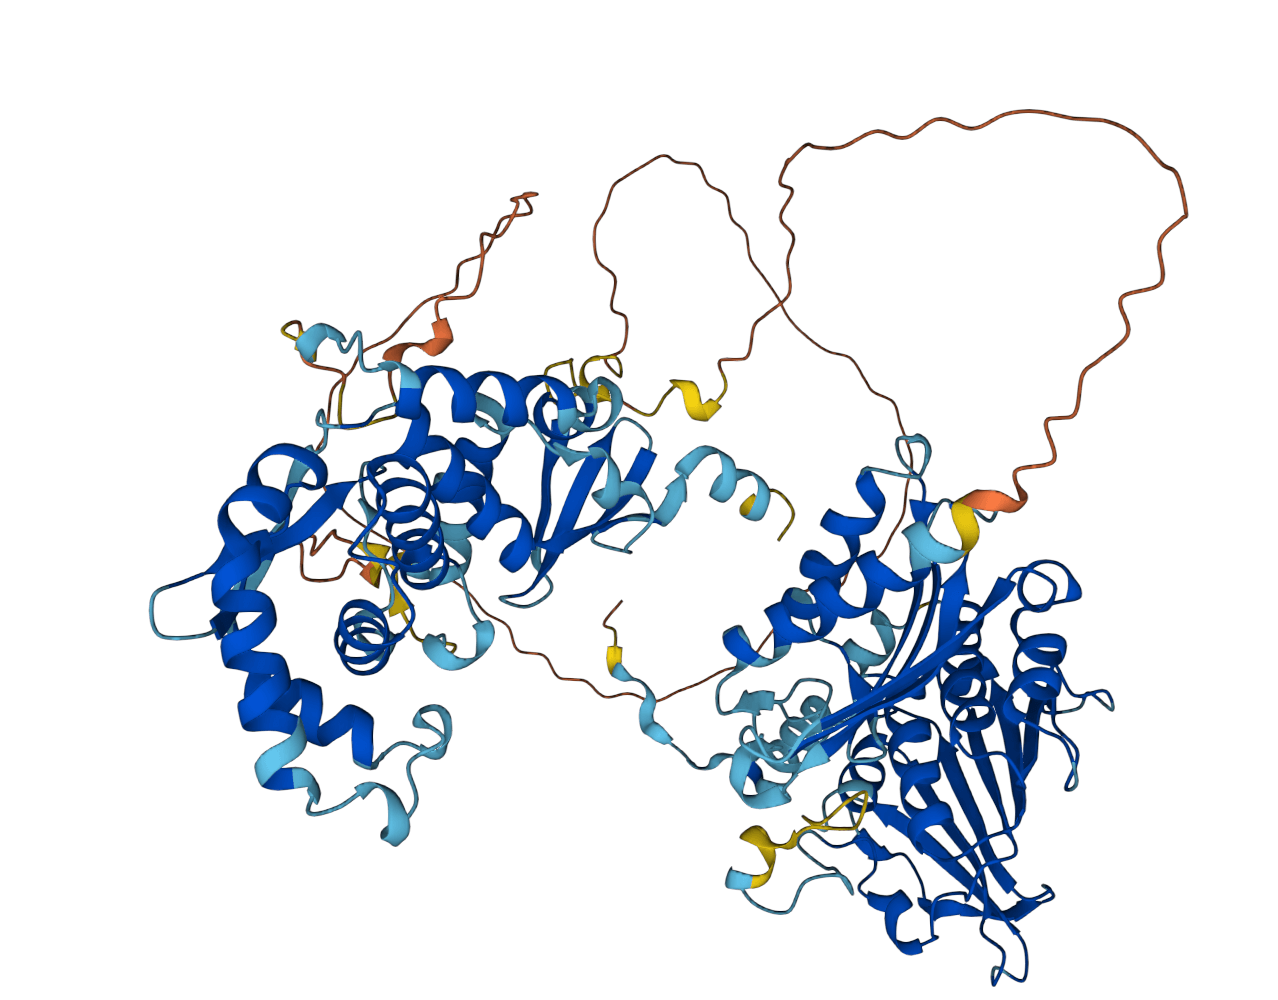 Struktur af mismatch protein